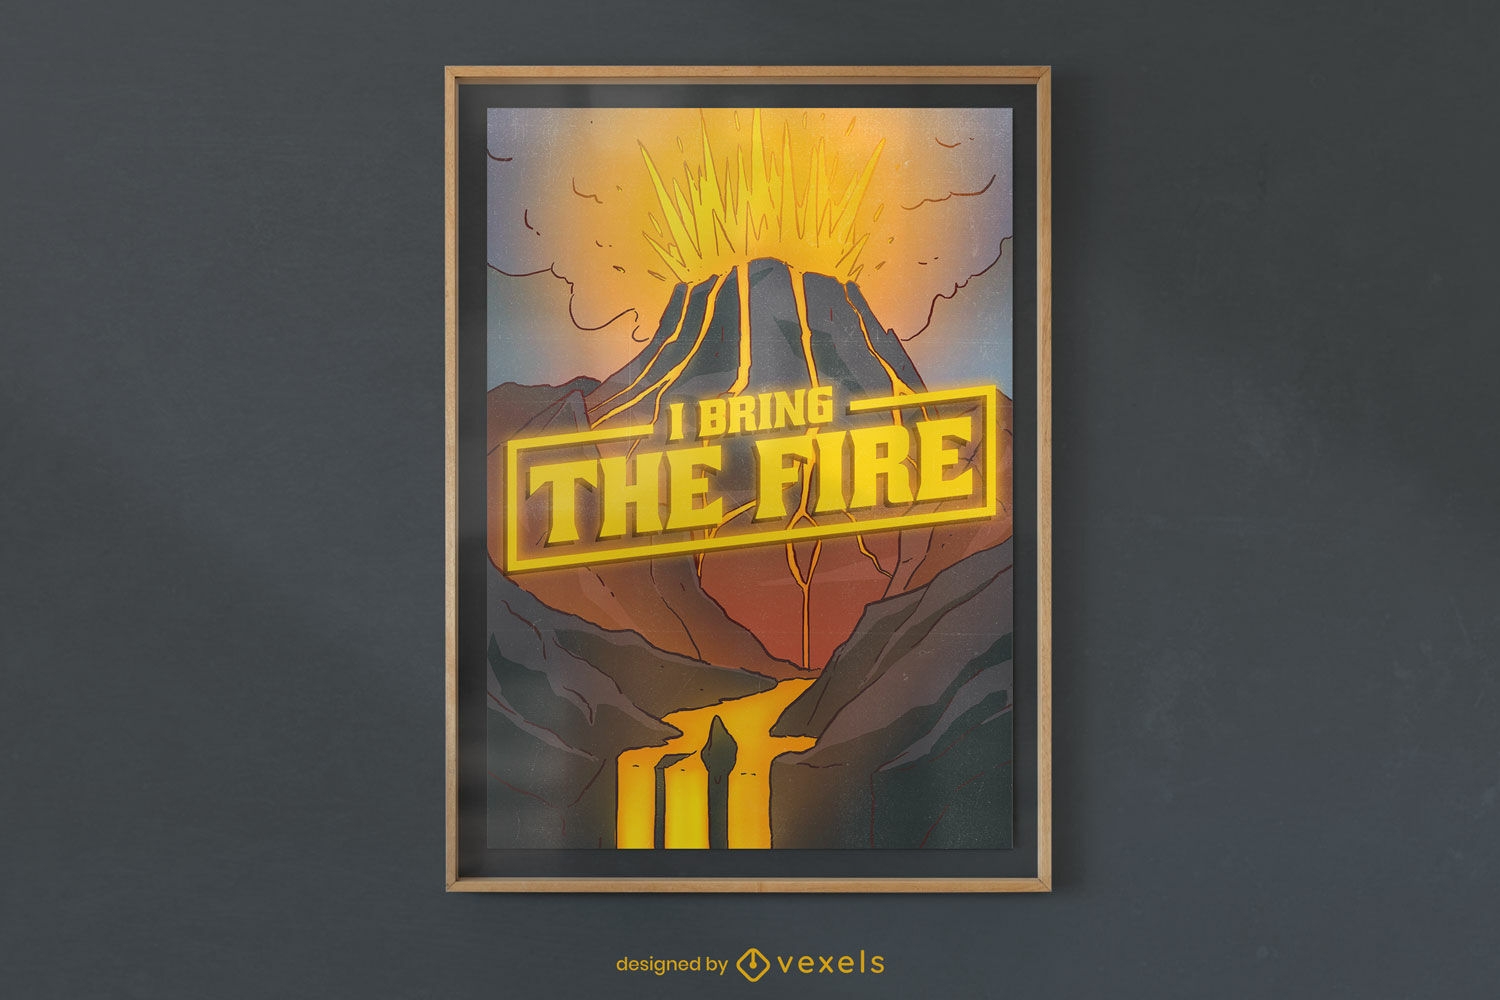 Vulkanausbruch-Feuer-Zitat-Poster-Design